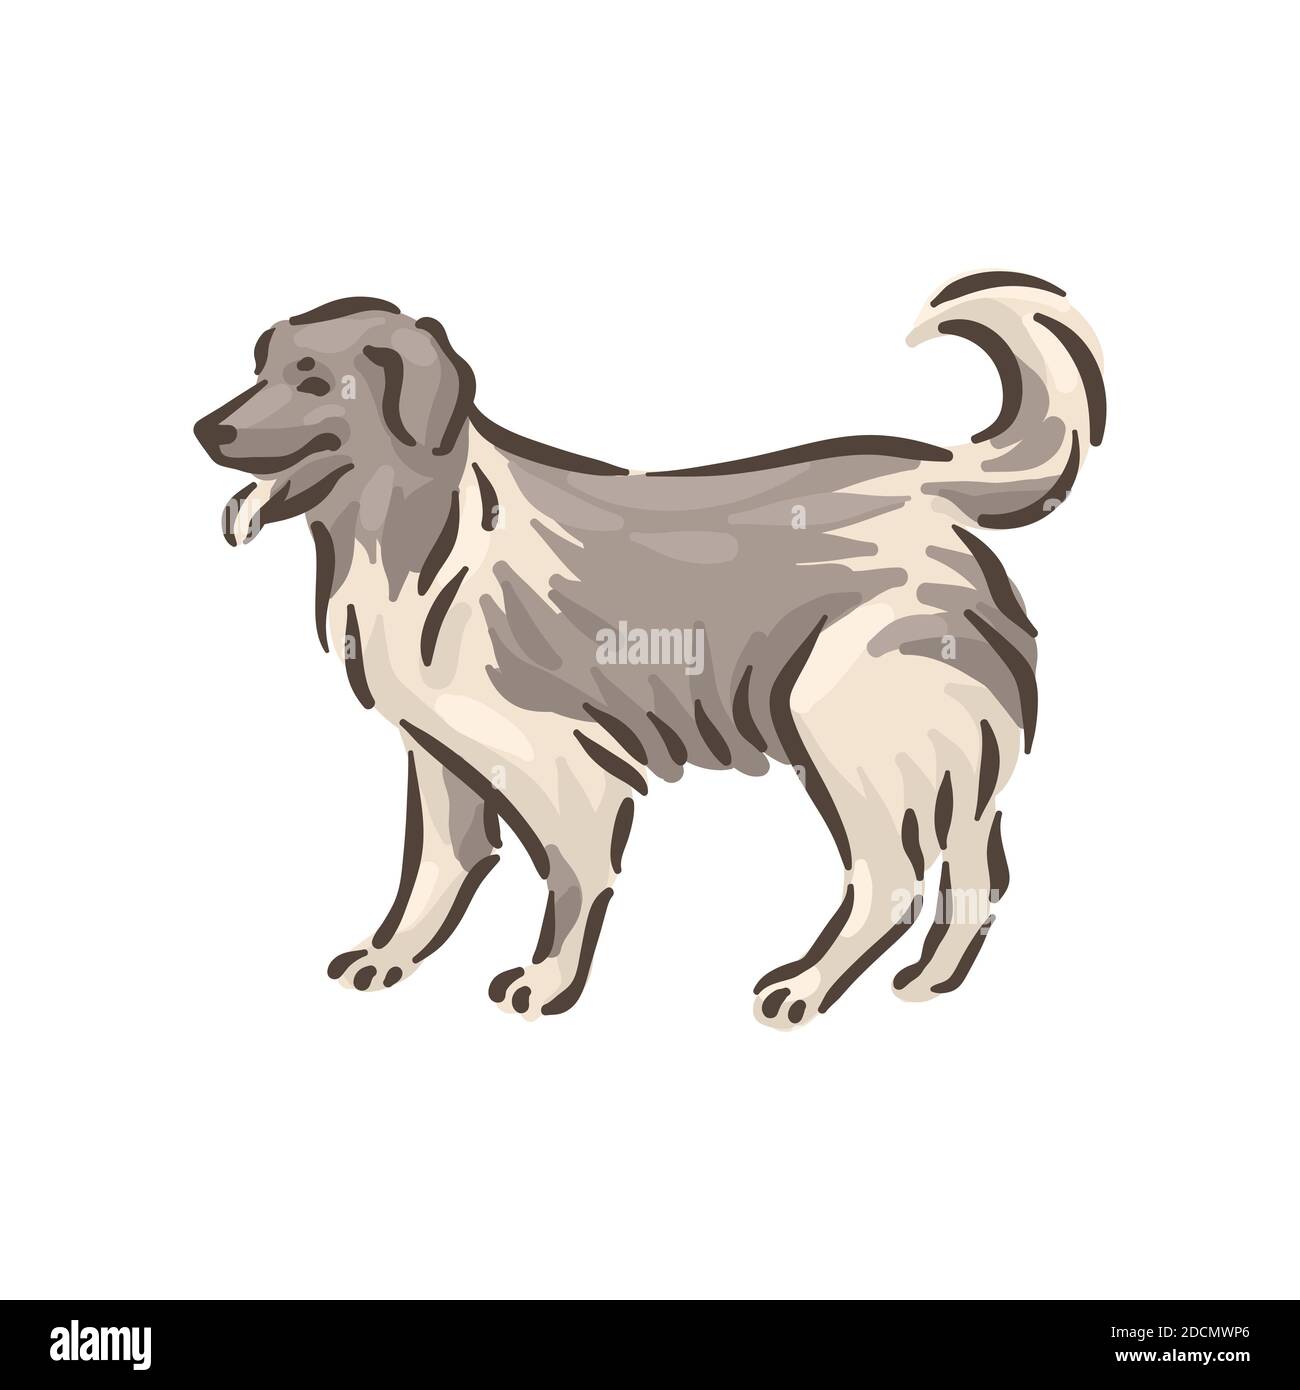 Cute Hund kaukasischen Schäferhund Rasse Stammbaum Vektor Illustration Stock Vektor